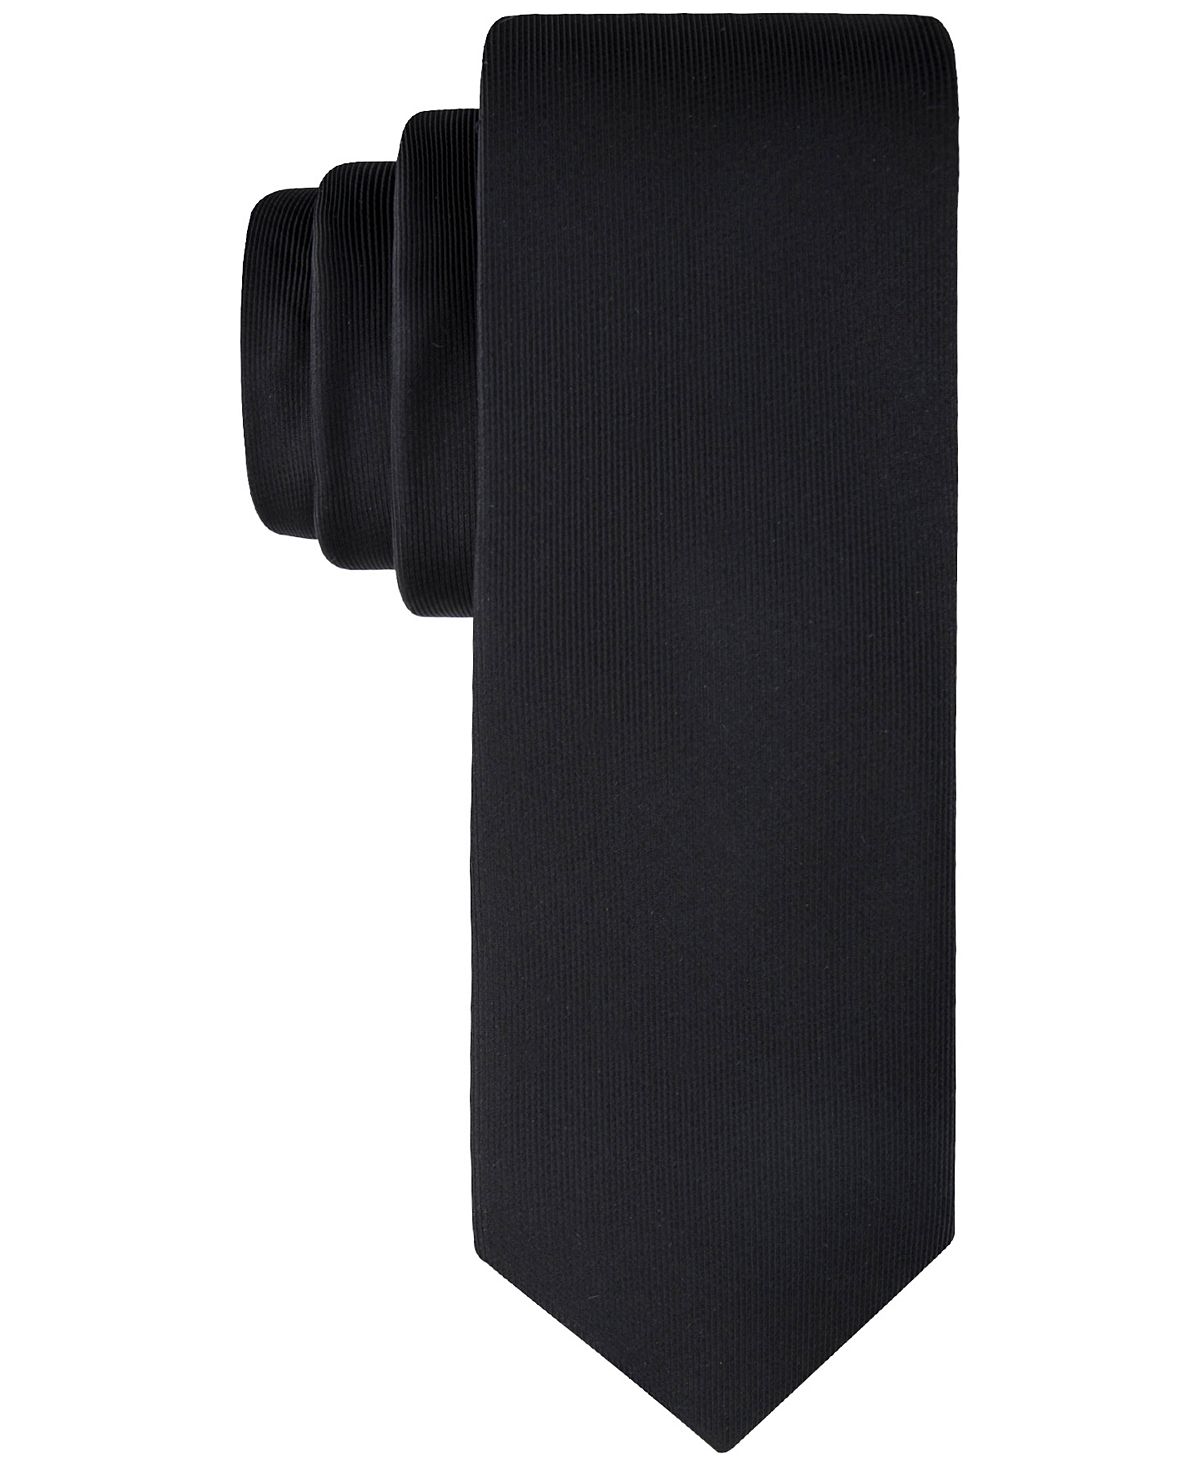 Мужской однотонный галстук-унисон Calvin Klein молодежный коричневый галстук с надписями calvin klein 2252